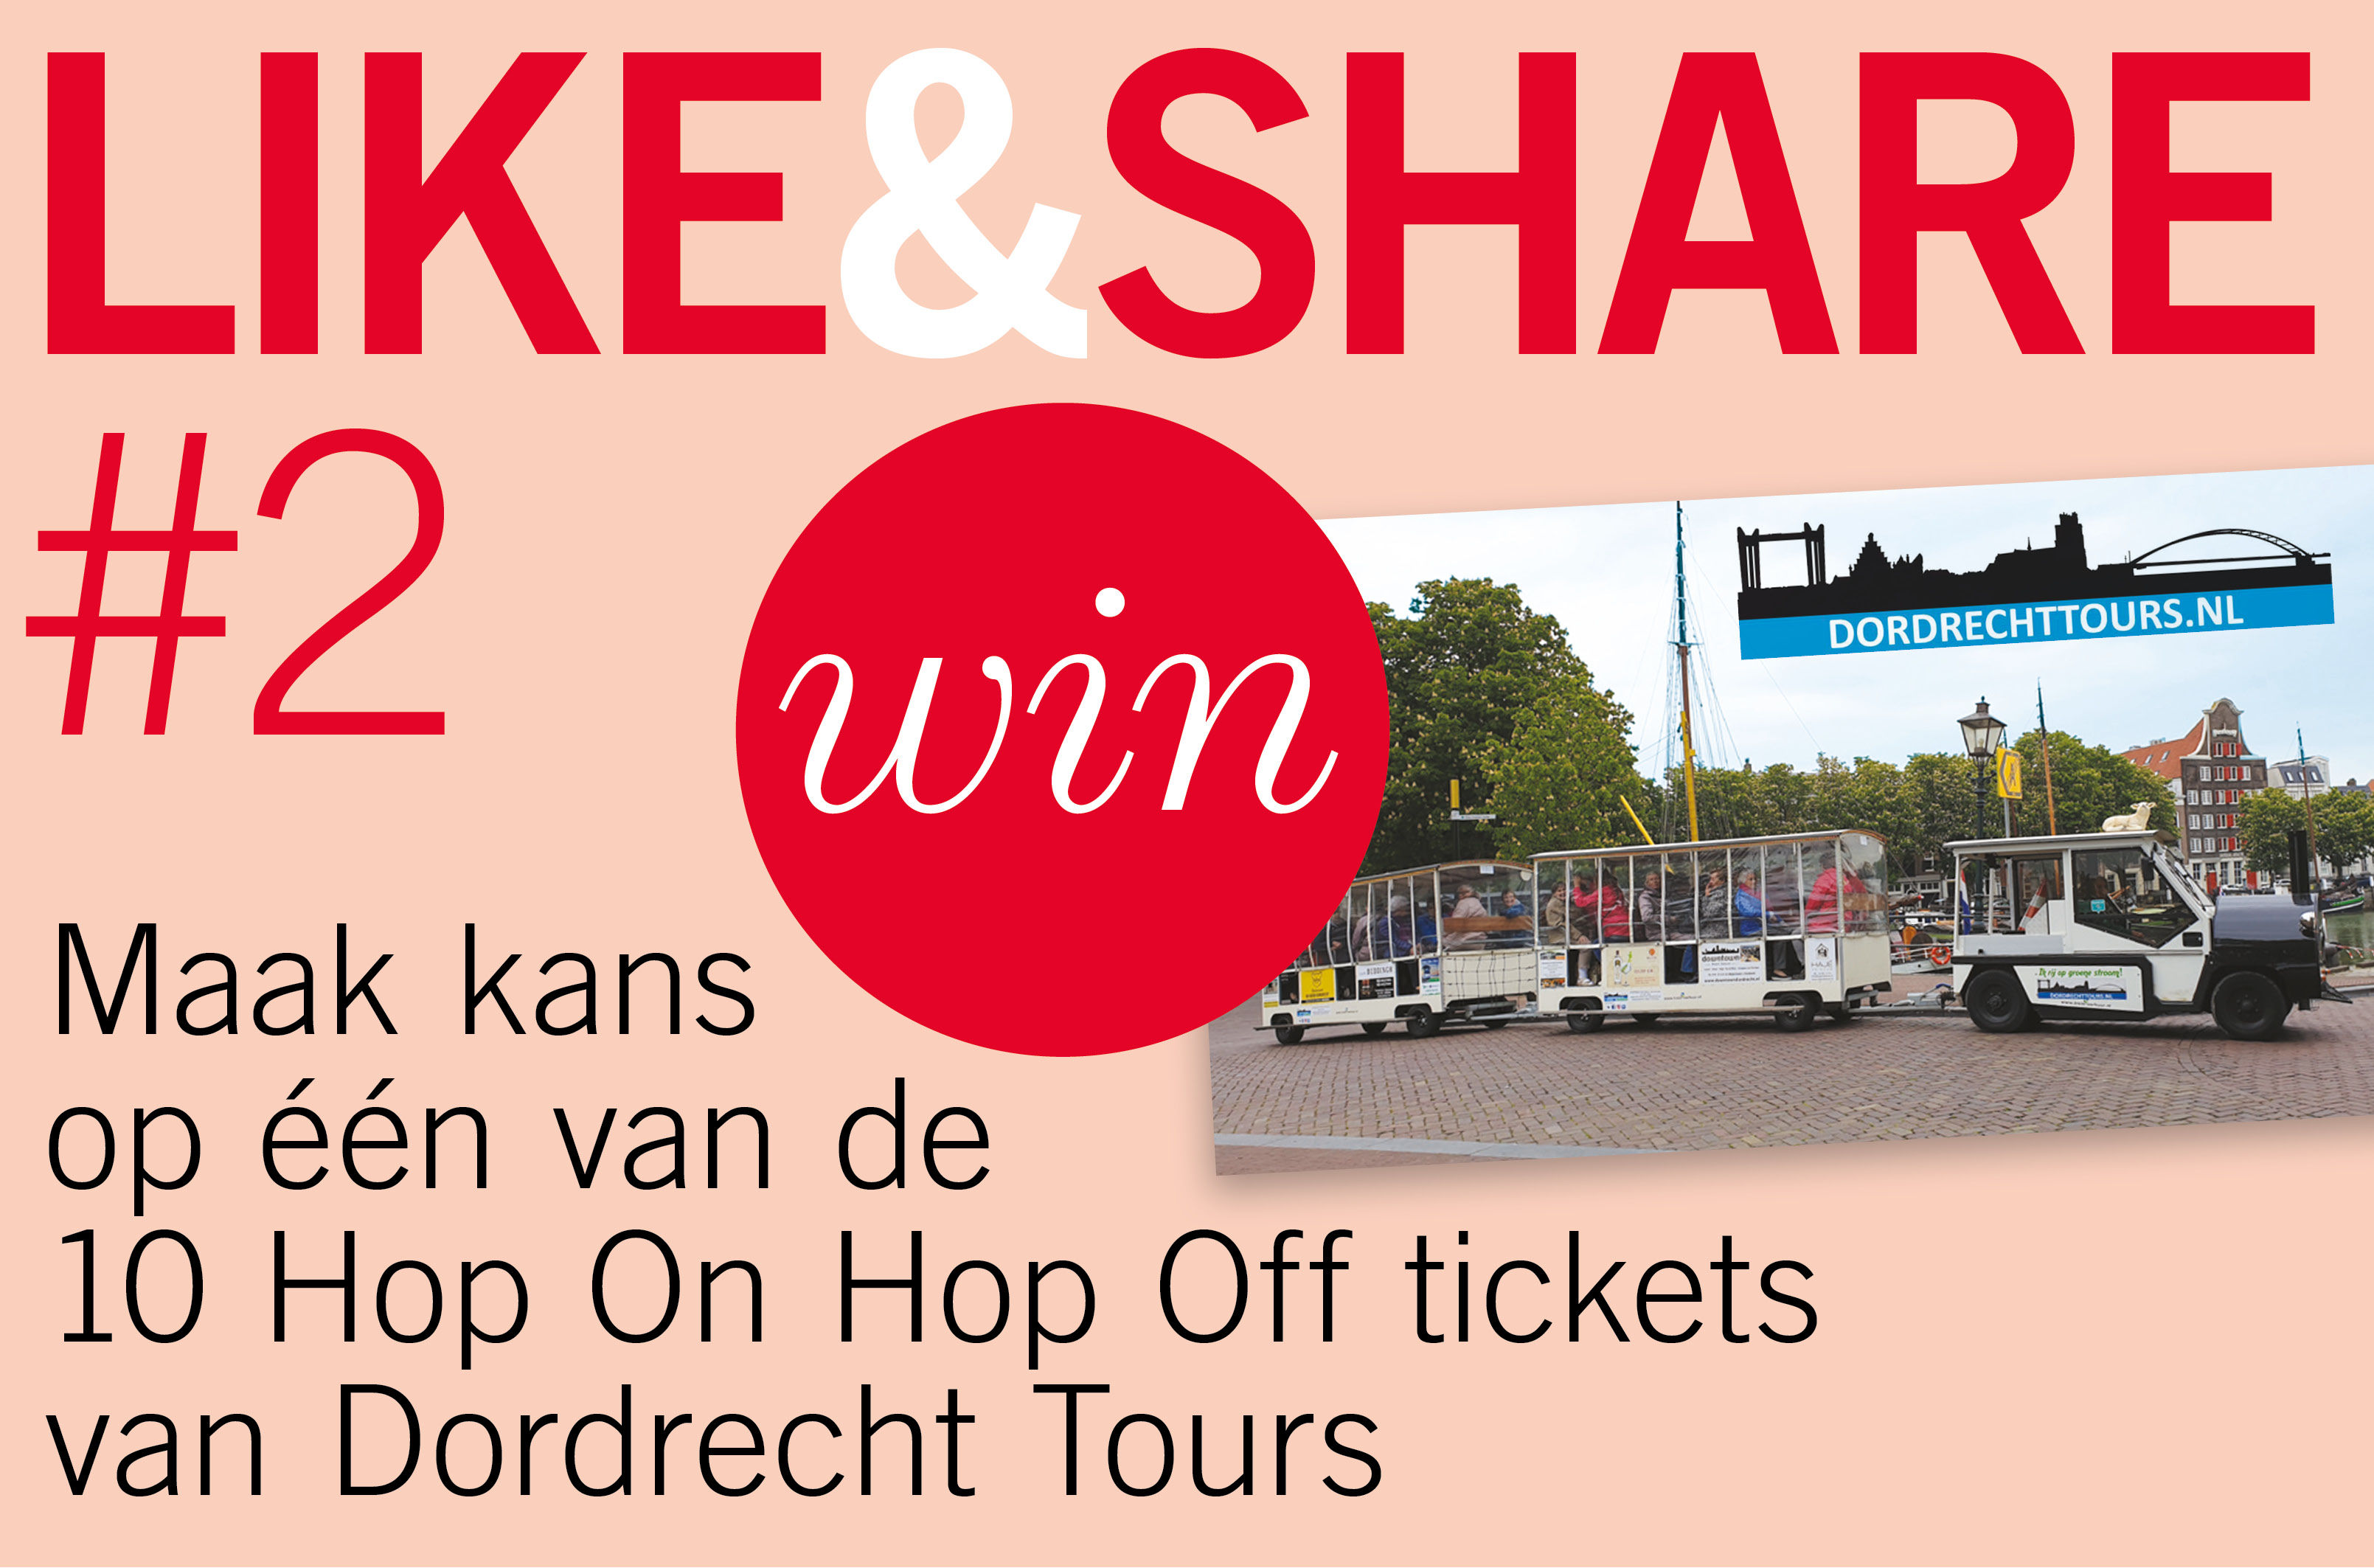 Maak kans op één van de 10 Hop On Hop Off tickets van Dordrecht Tours.
